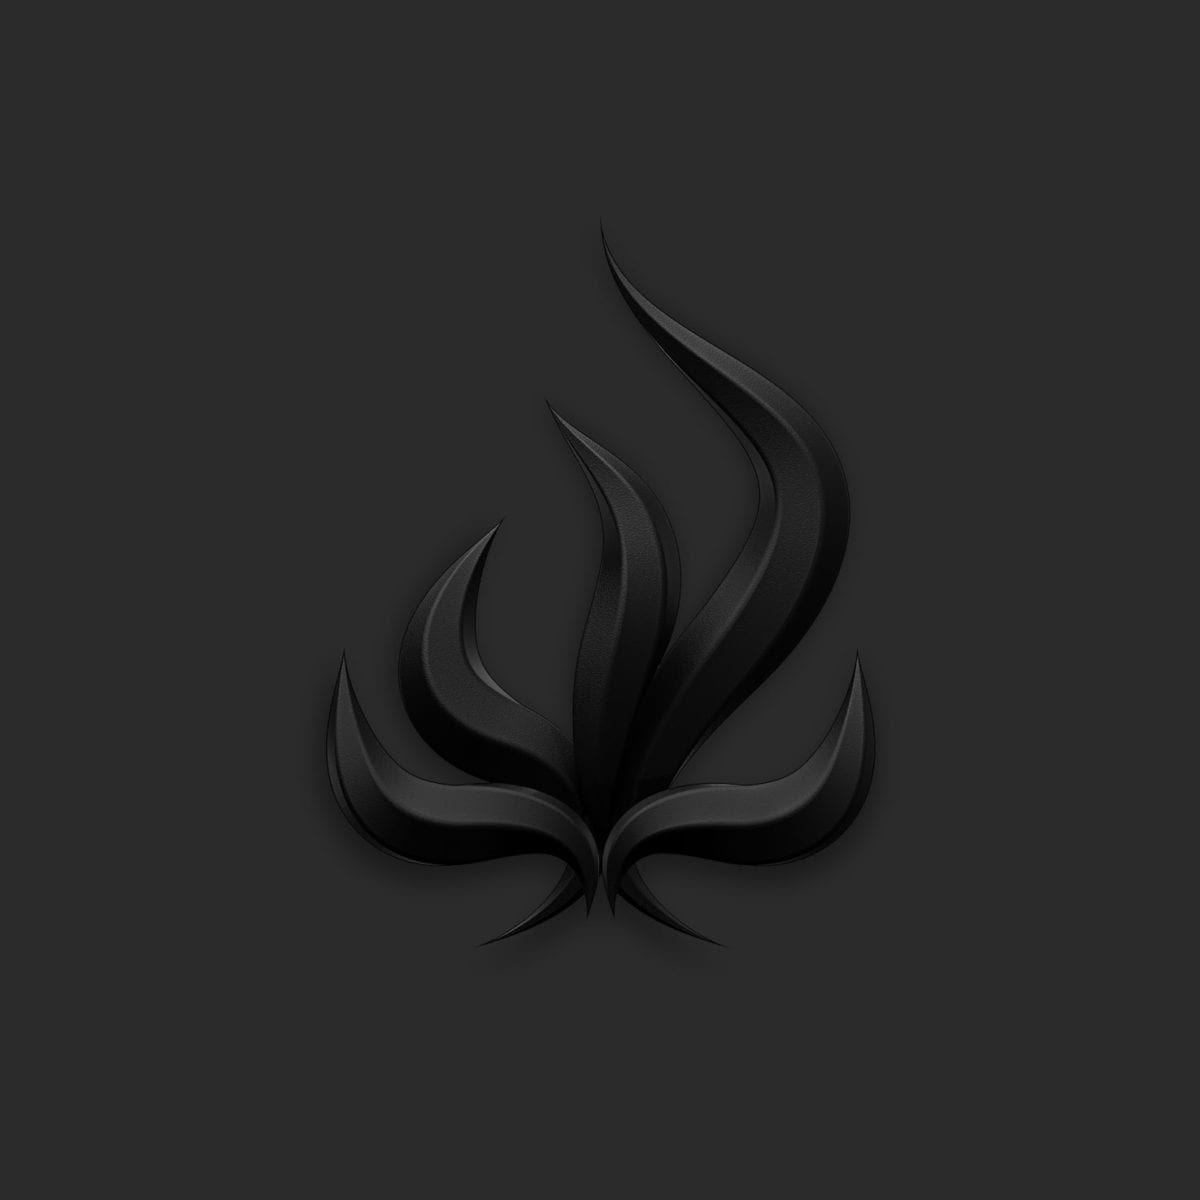 Burry Tomorrow "Black Flame" Album Cover